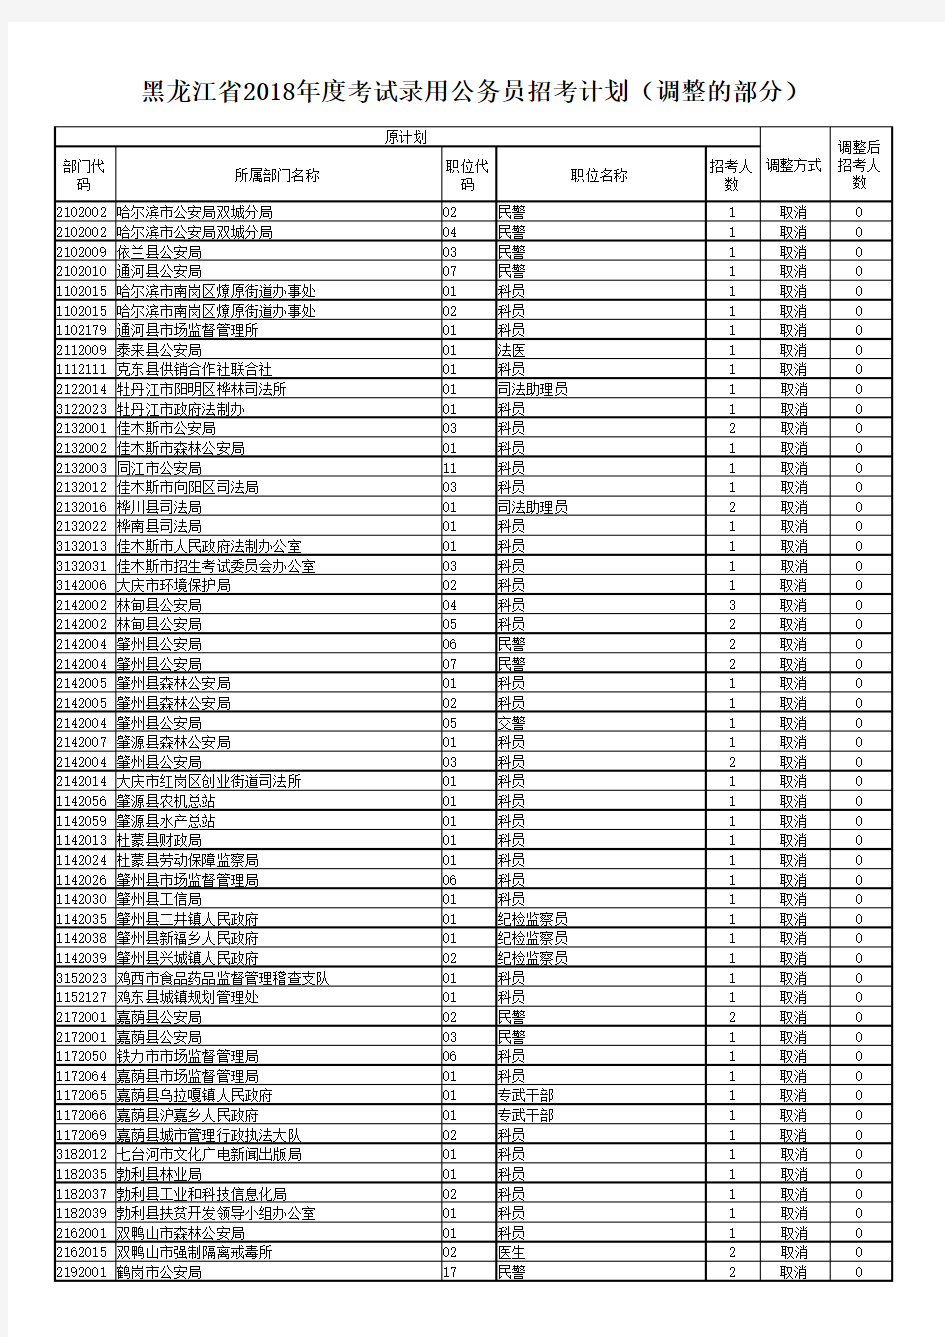 黑龙江省2018年度考试录用公务员招考计划(调整部分)